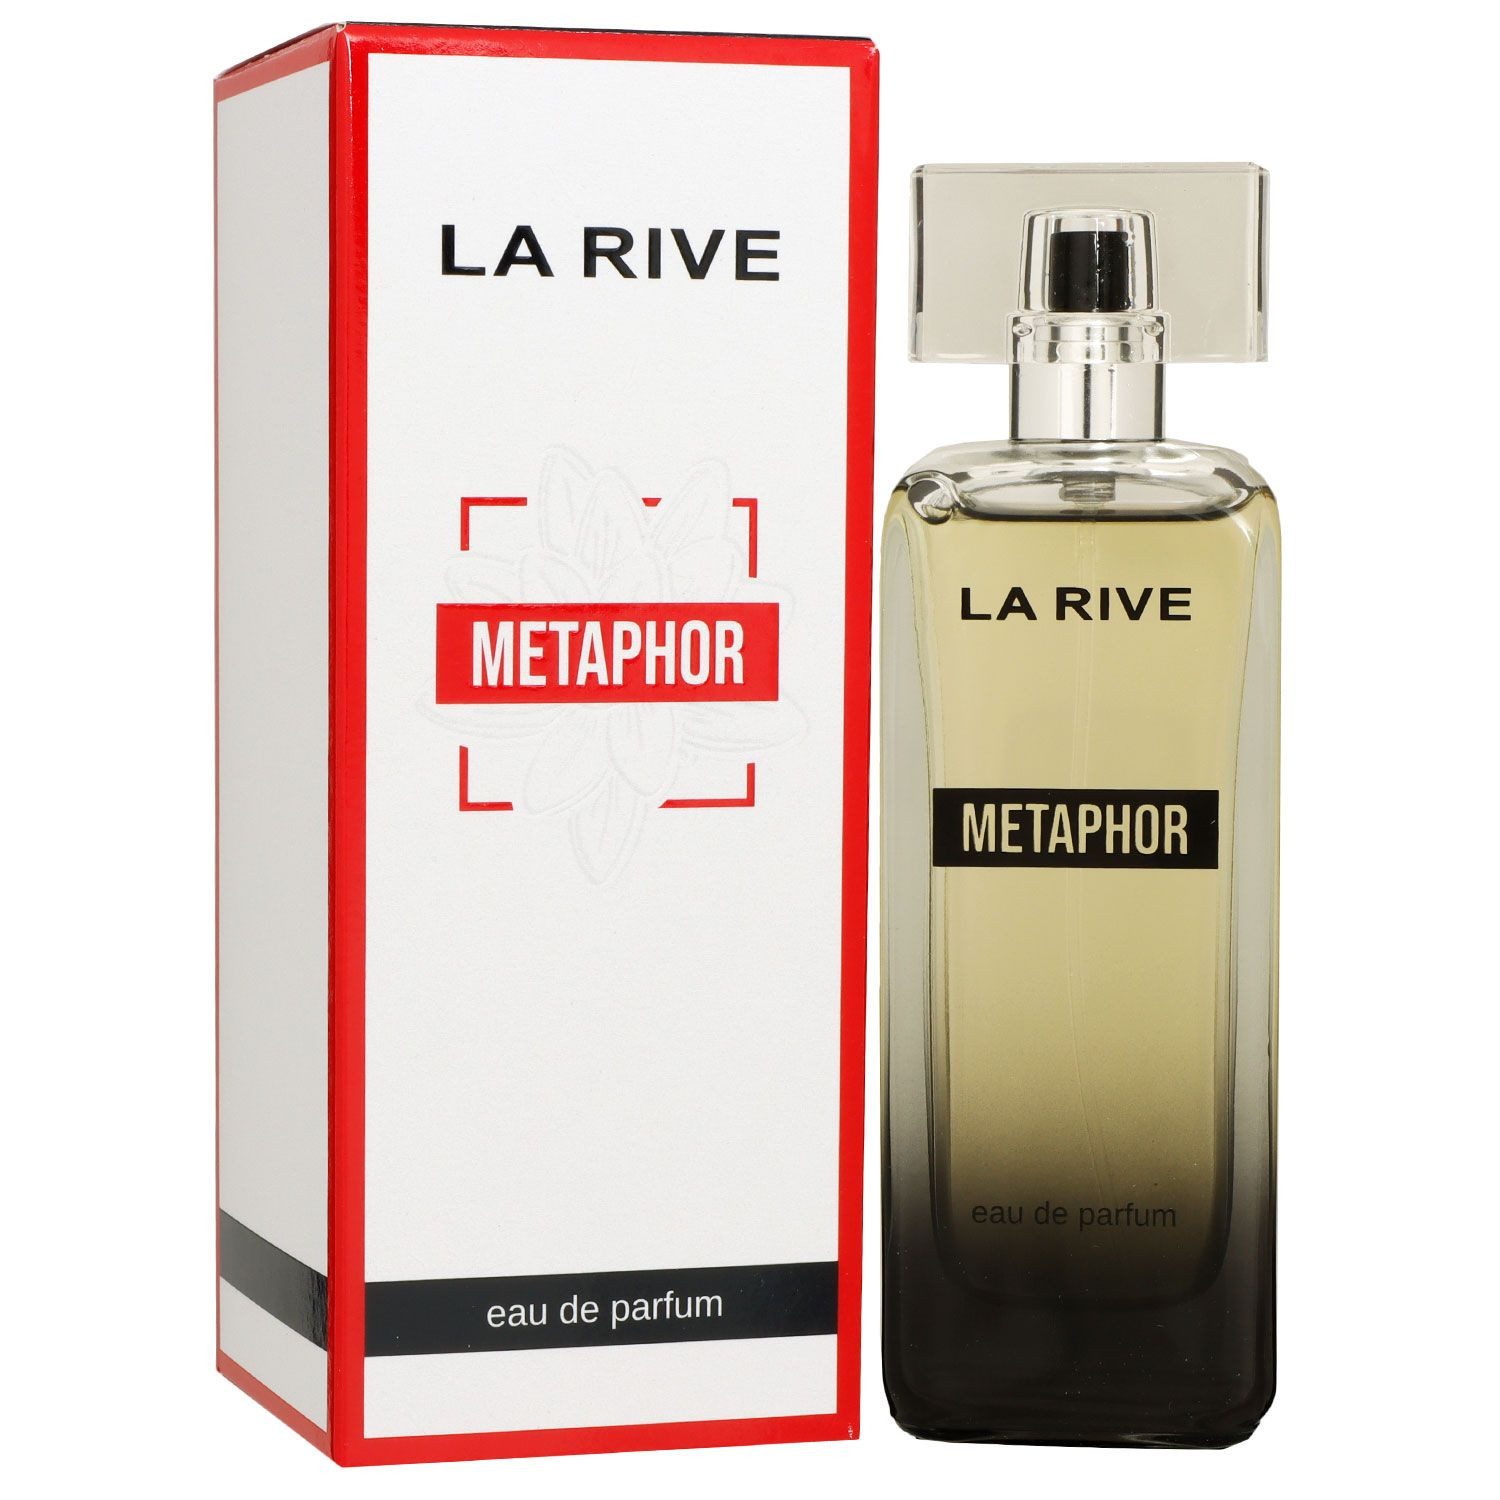 La Rive Eau de Parfum Metaphor 100 ml